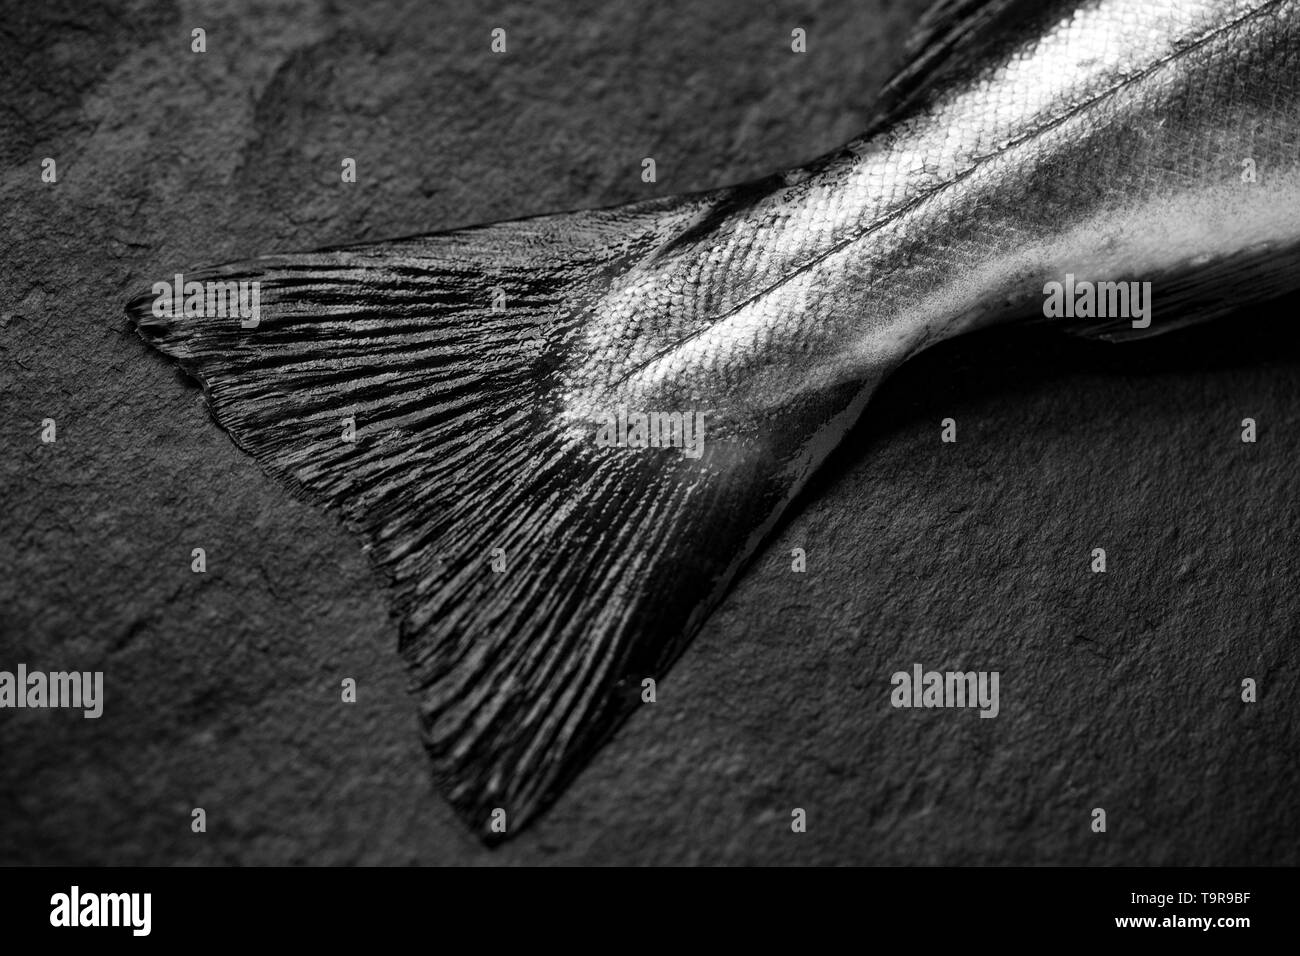 Die schwanzflosse oder Schwanzflosse und scale Pattern, der eine rohe, ungekochte Pollack Pollachius pollachius, die auf der Stange und line Boot angeln in Th e gefangen wurde Stockfoto